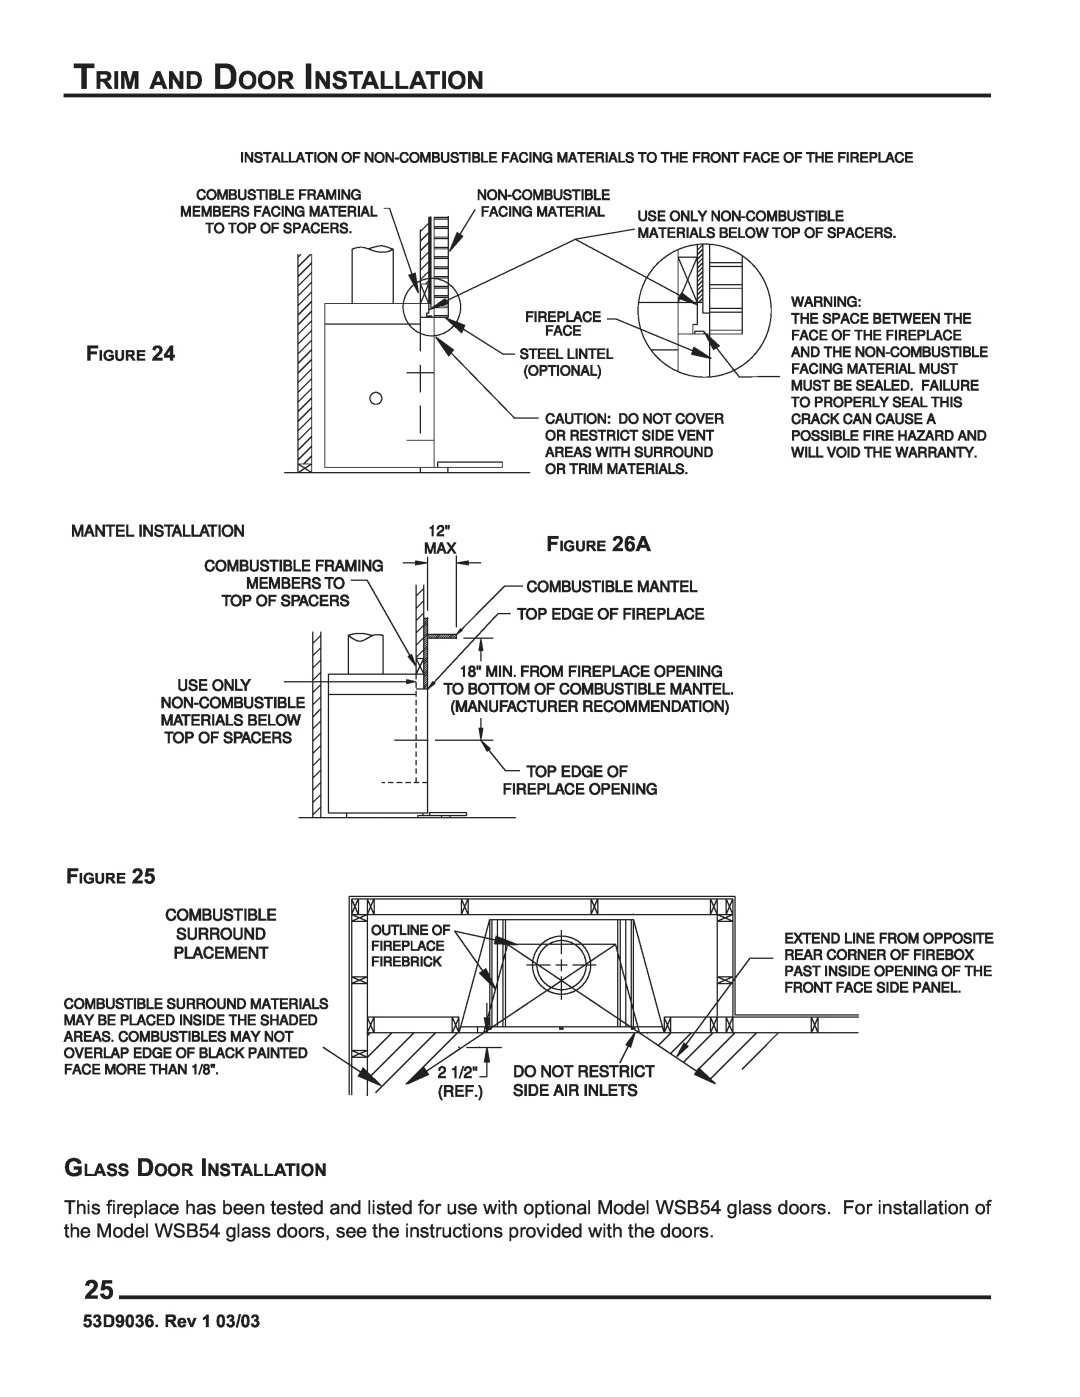 Monessen Hearth HWB700HB manual Trim And Door Installation, Glass Door Installation, 53D9036. Rev 1 03/03 